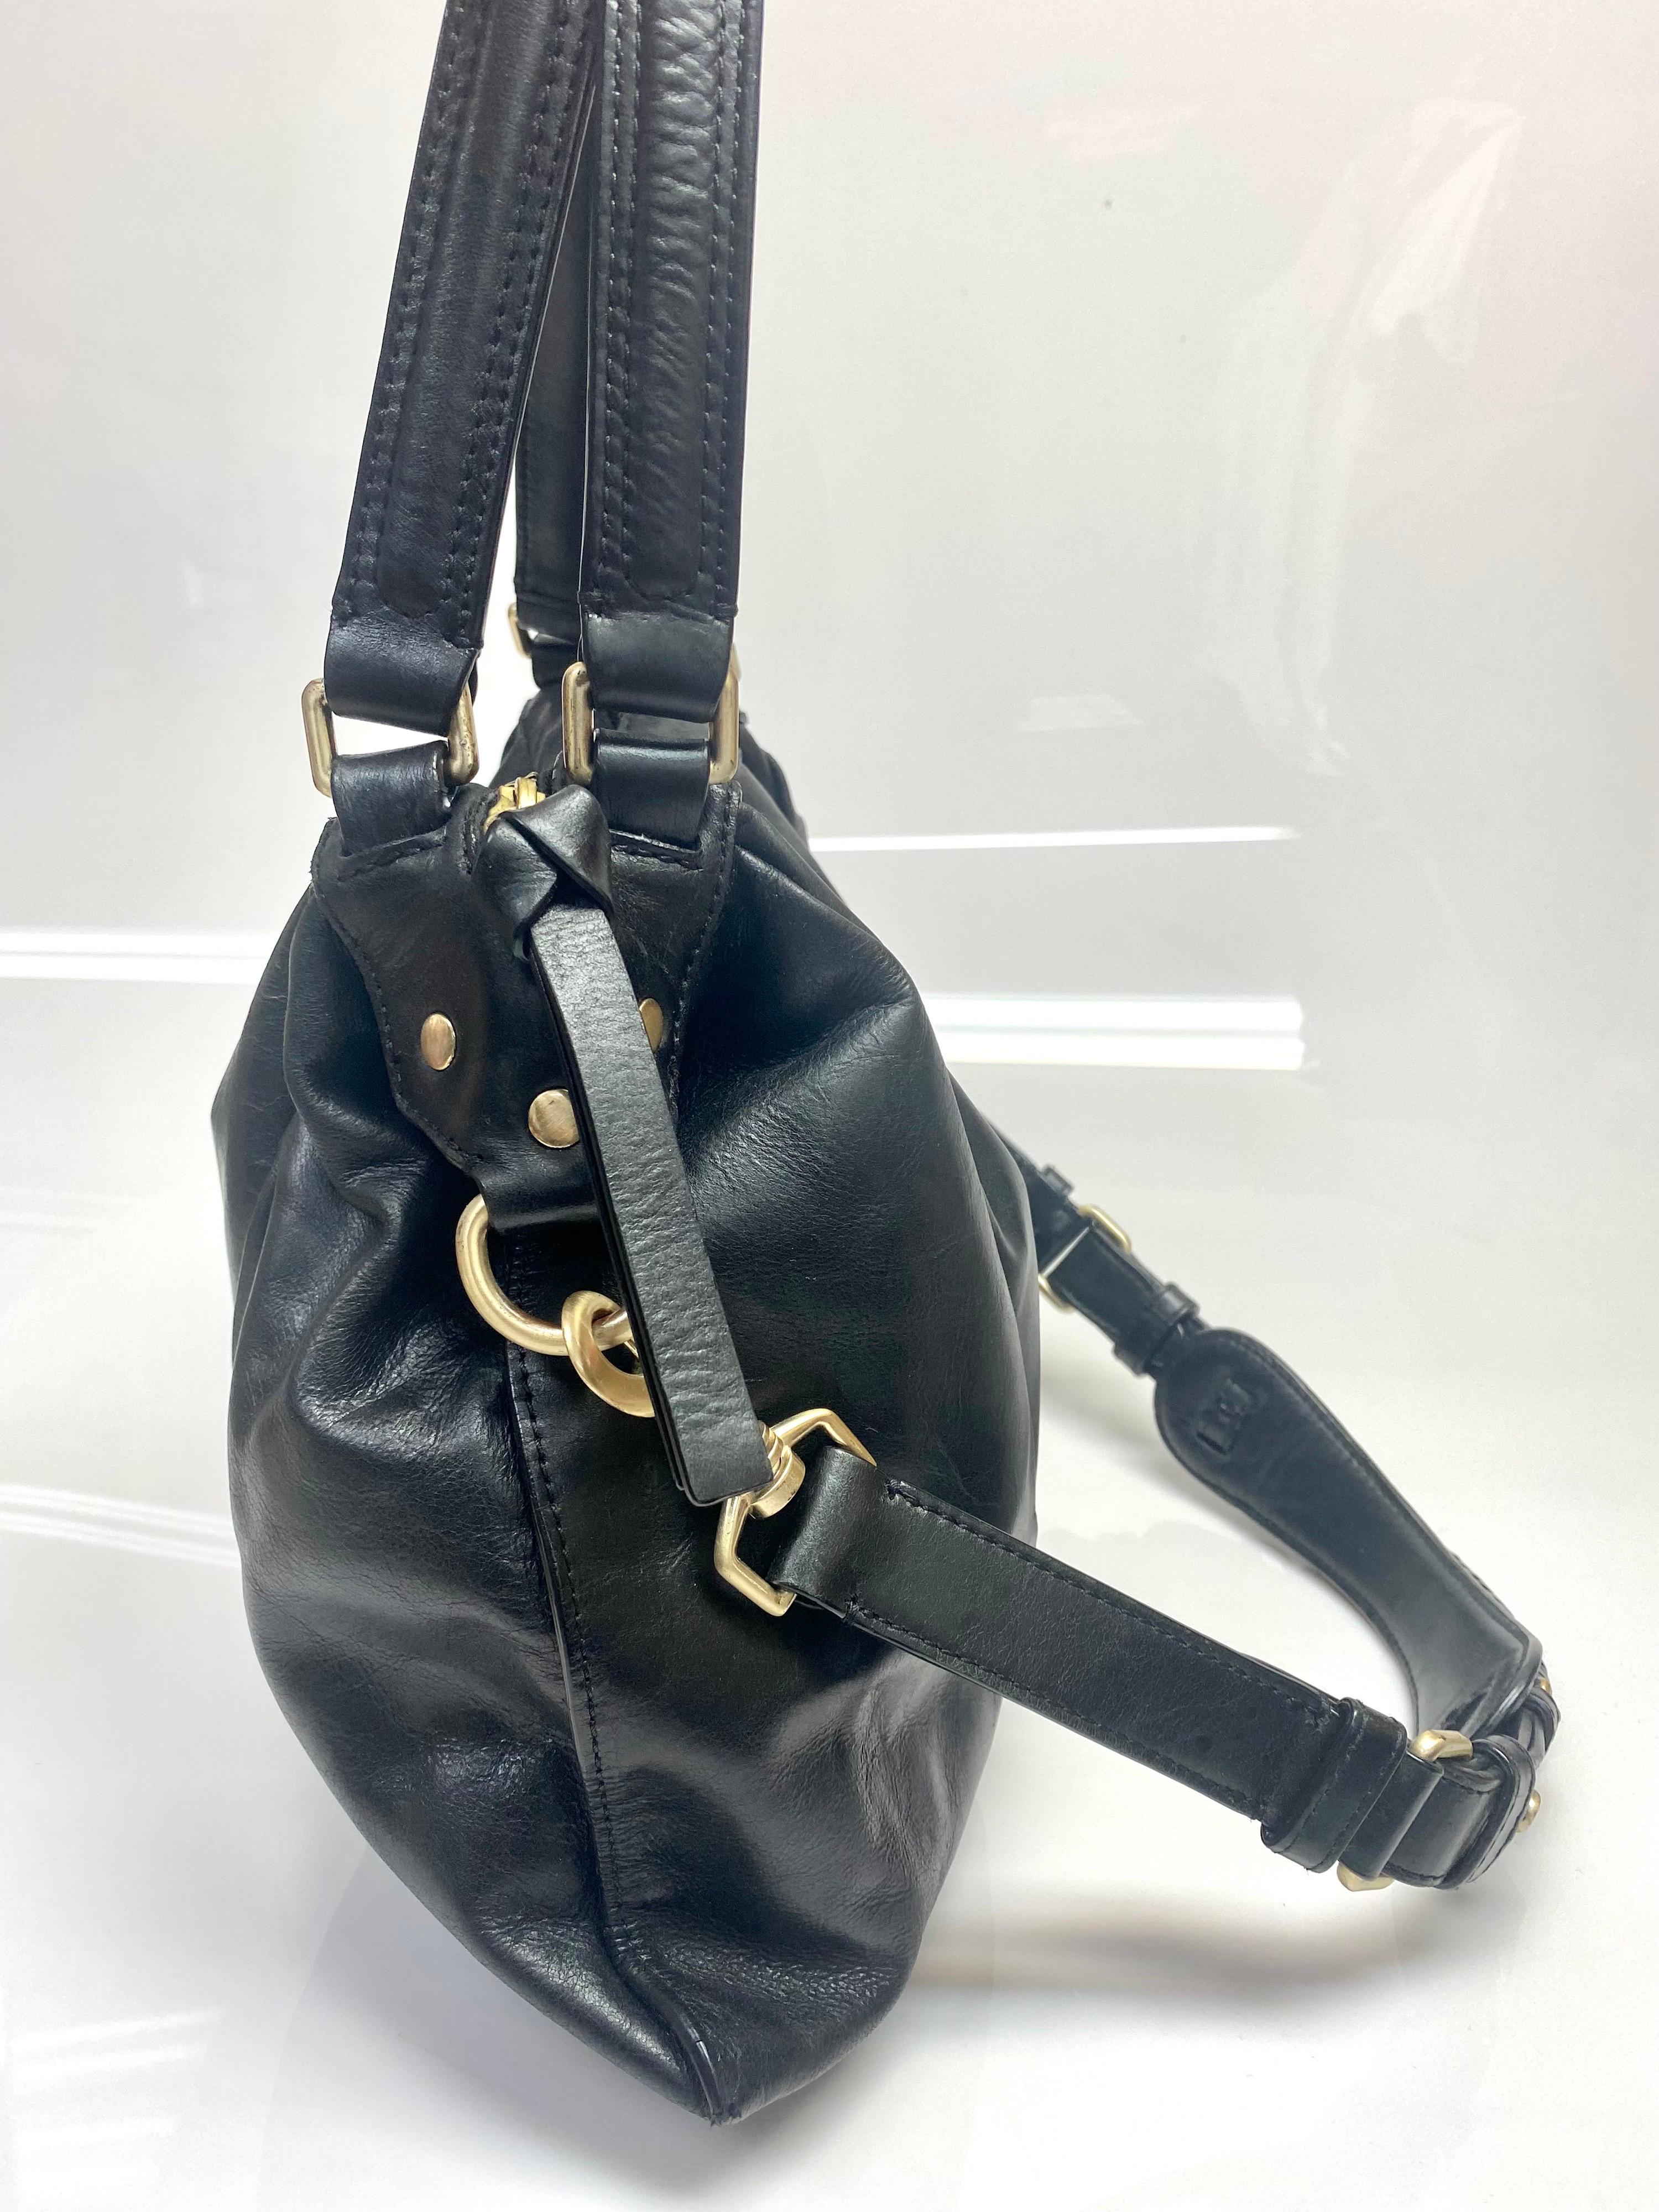 Givenchy Black Leather Shoulder Handbag-GHW For Sale 2